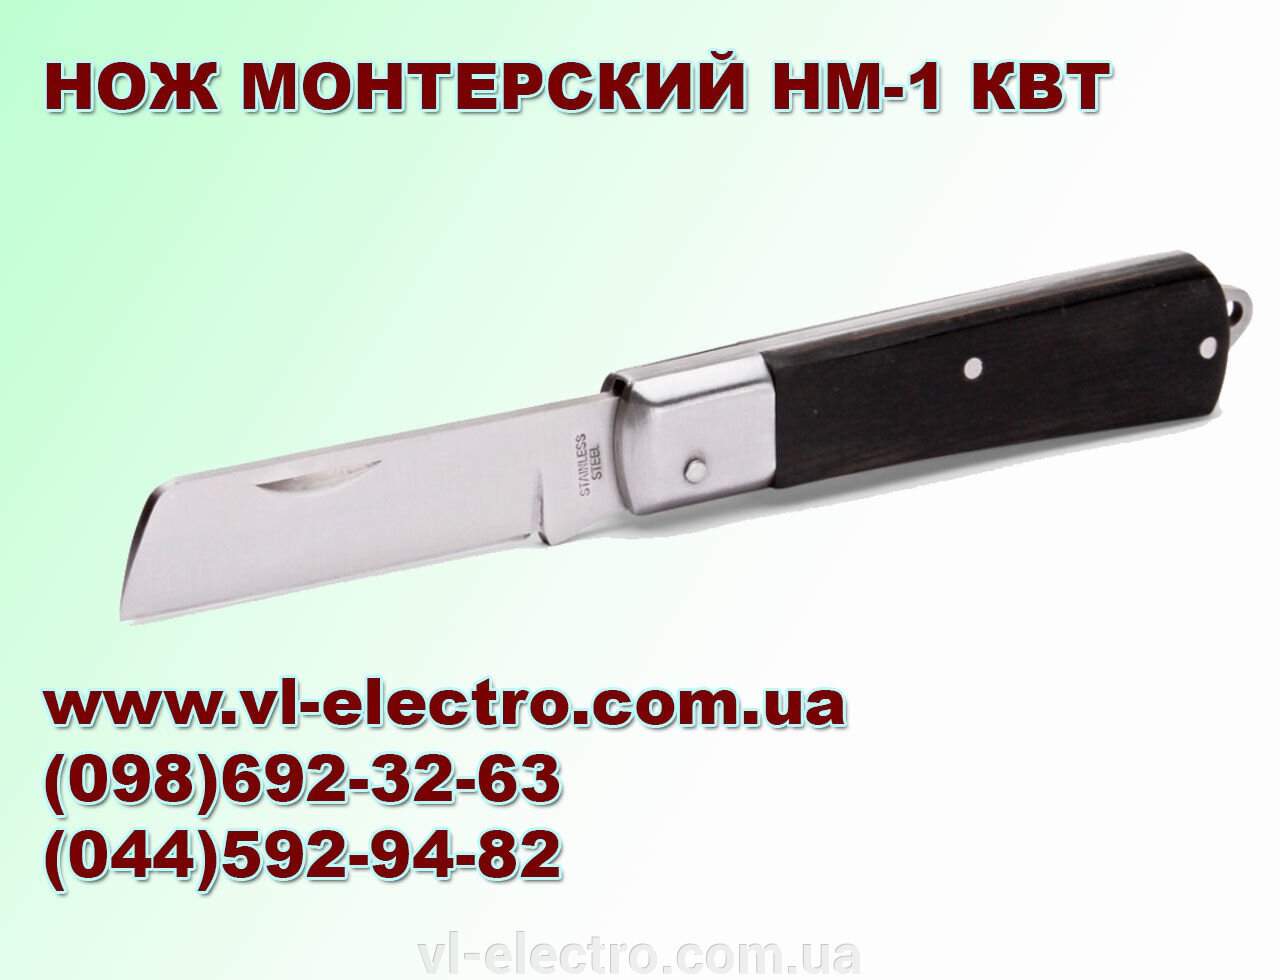 нож НМ-1 КВТ